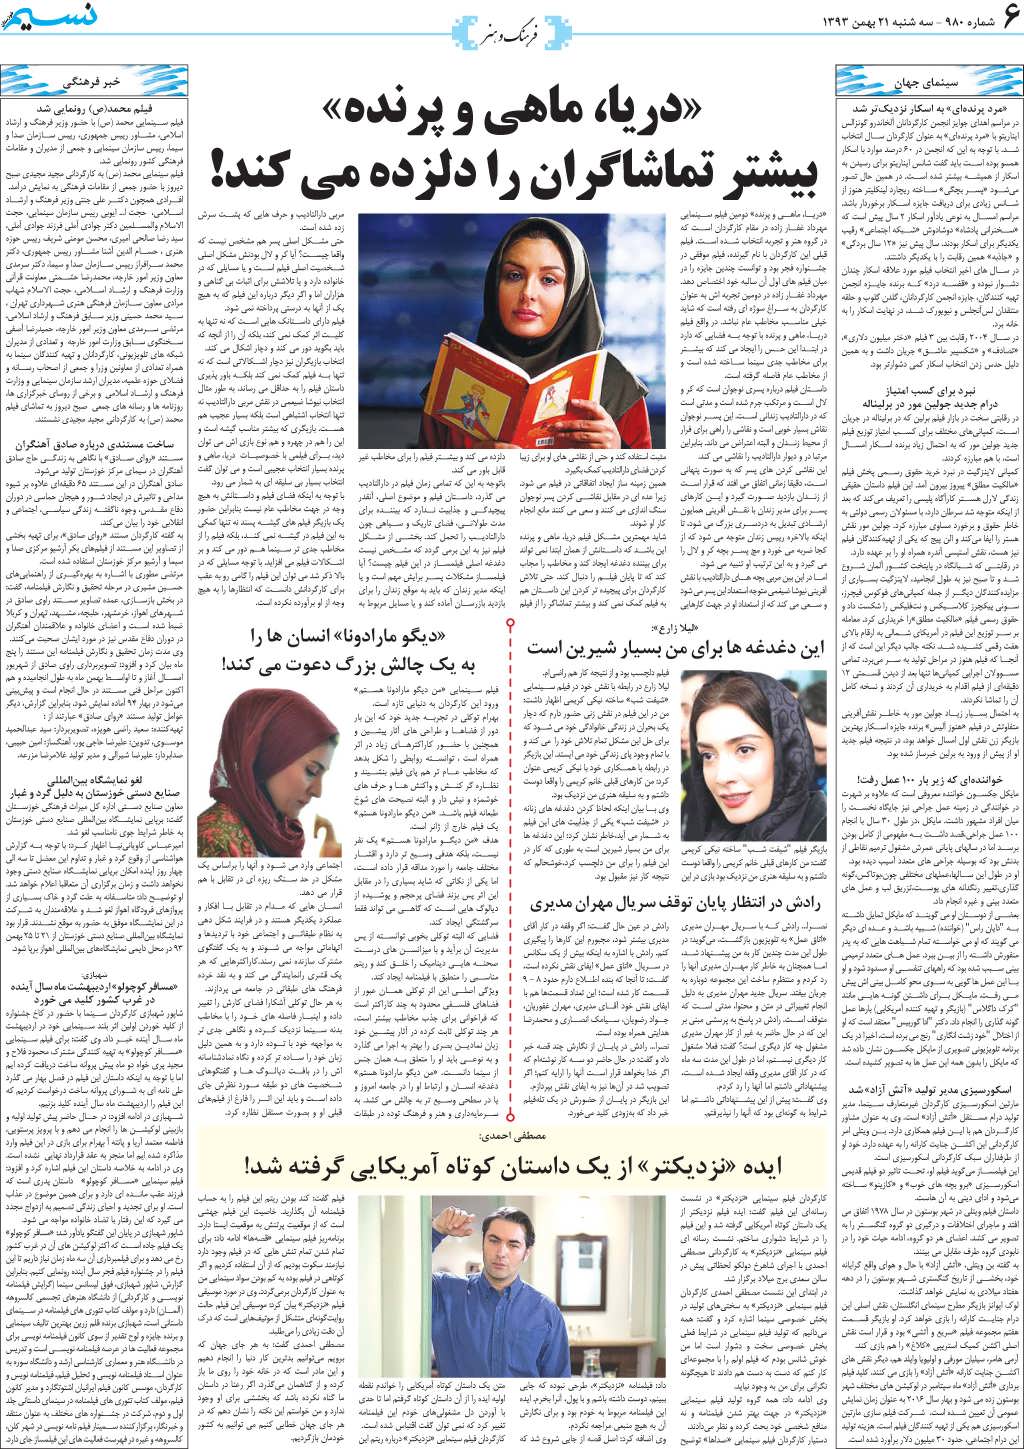 صفحه فرهنگ و هنر روزنامه نسیم شماره 980